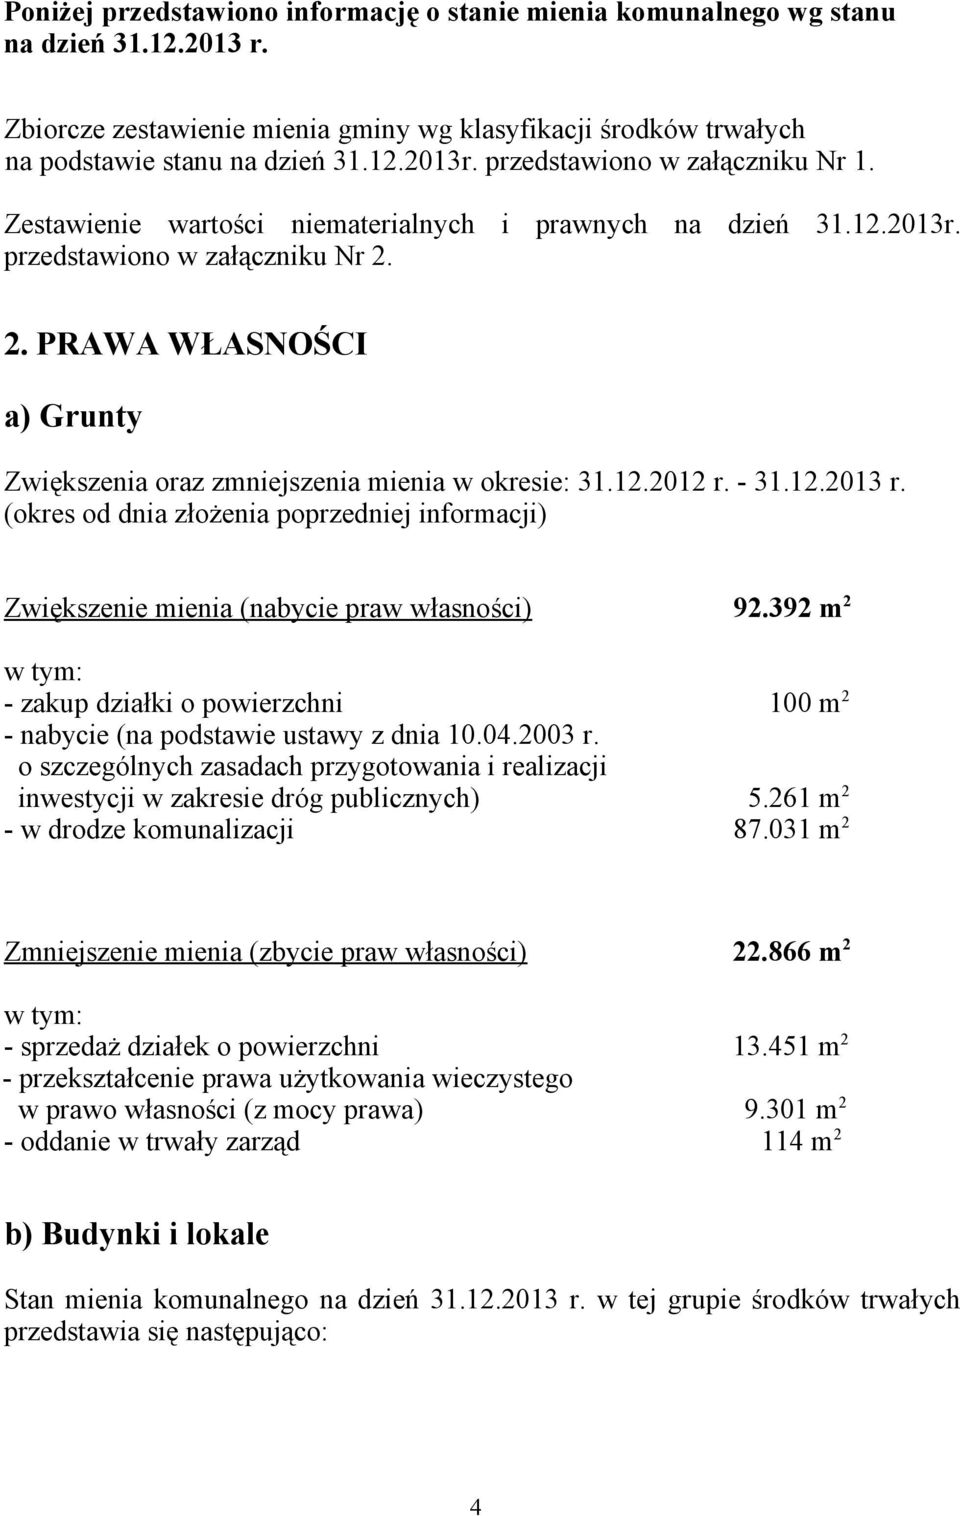 2. PRAWA WŁASNOŚCI a) Grunty Zwiększenia oraz zmniejszenia mienia w okresie: 31.12.2012 r. - 31.12.2013 r.